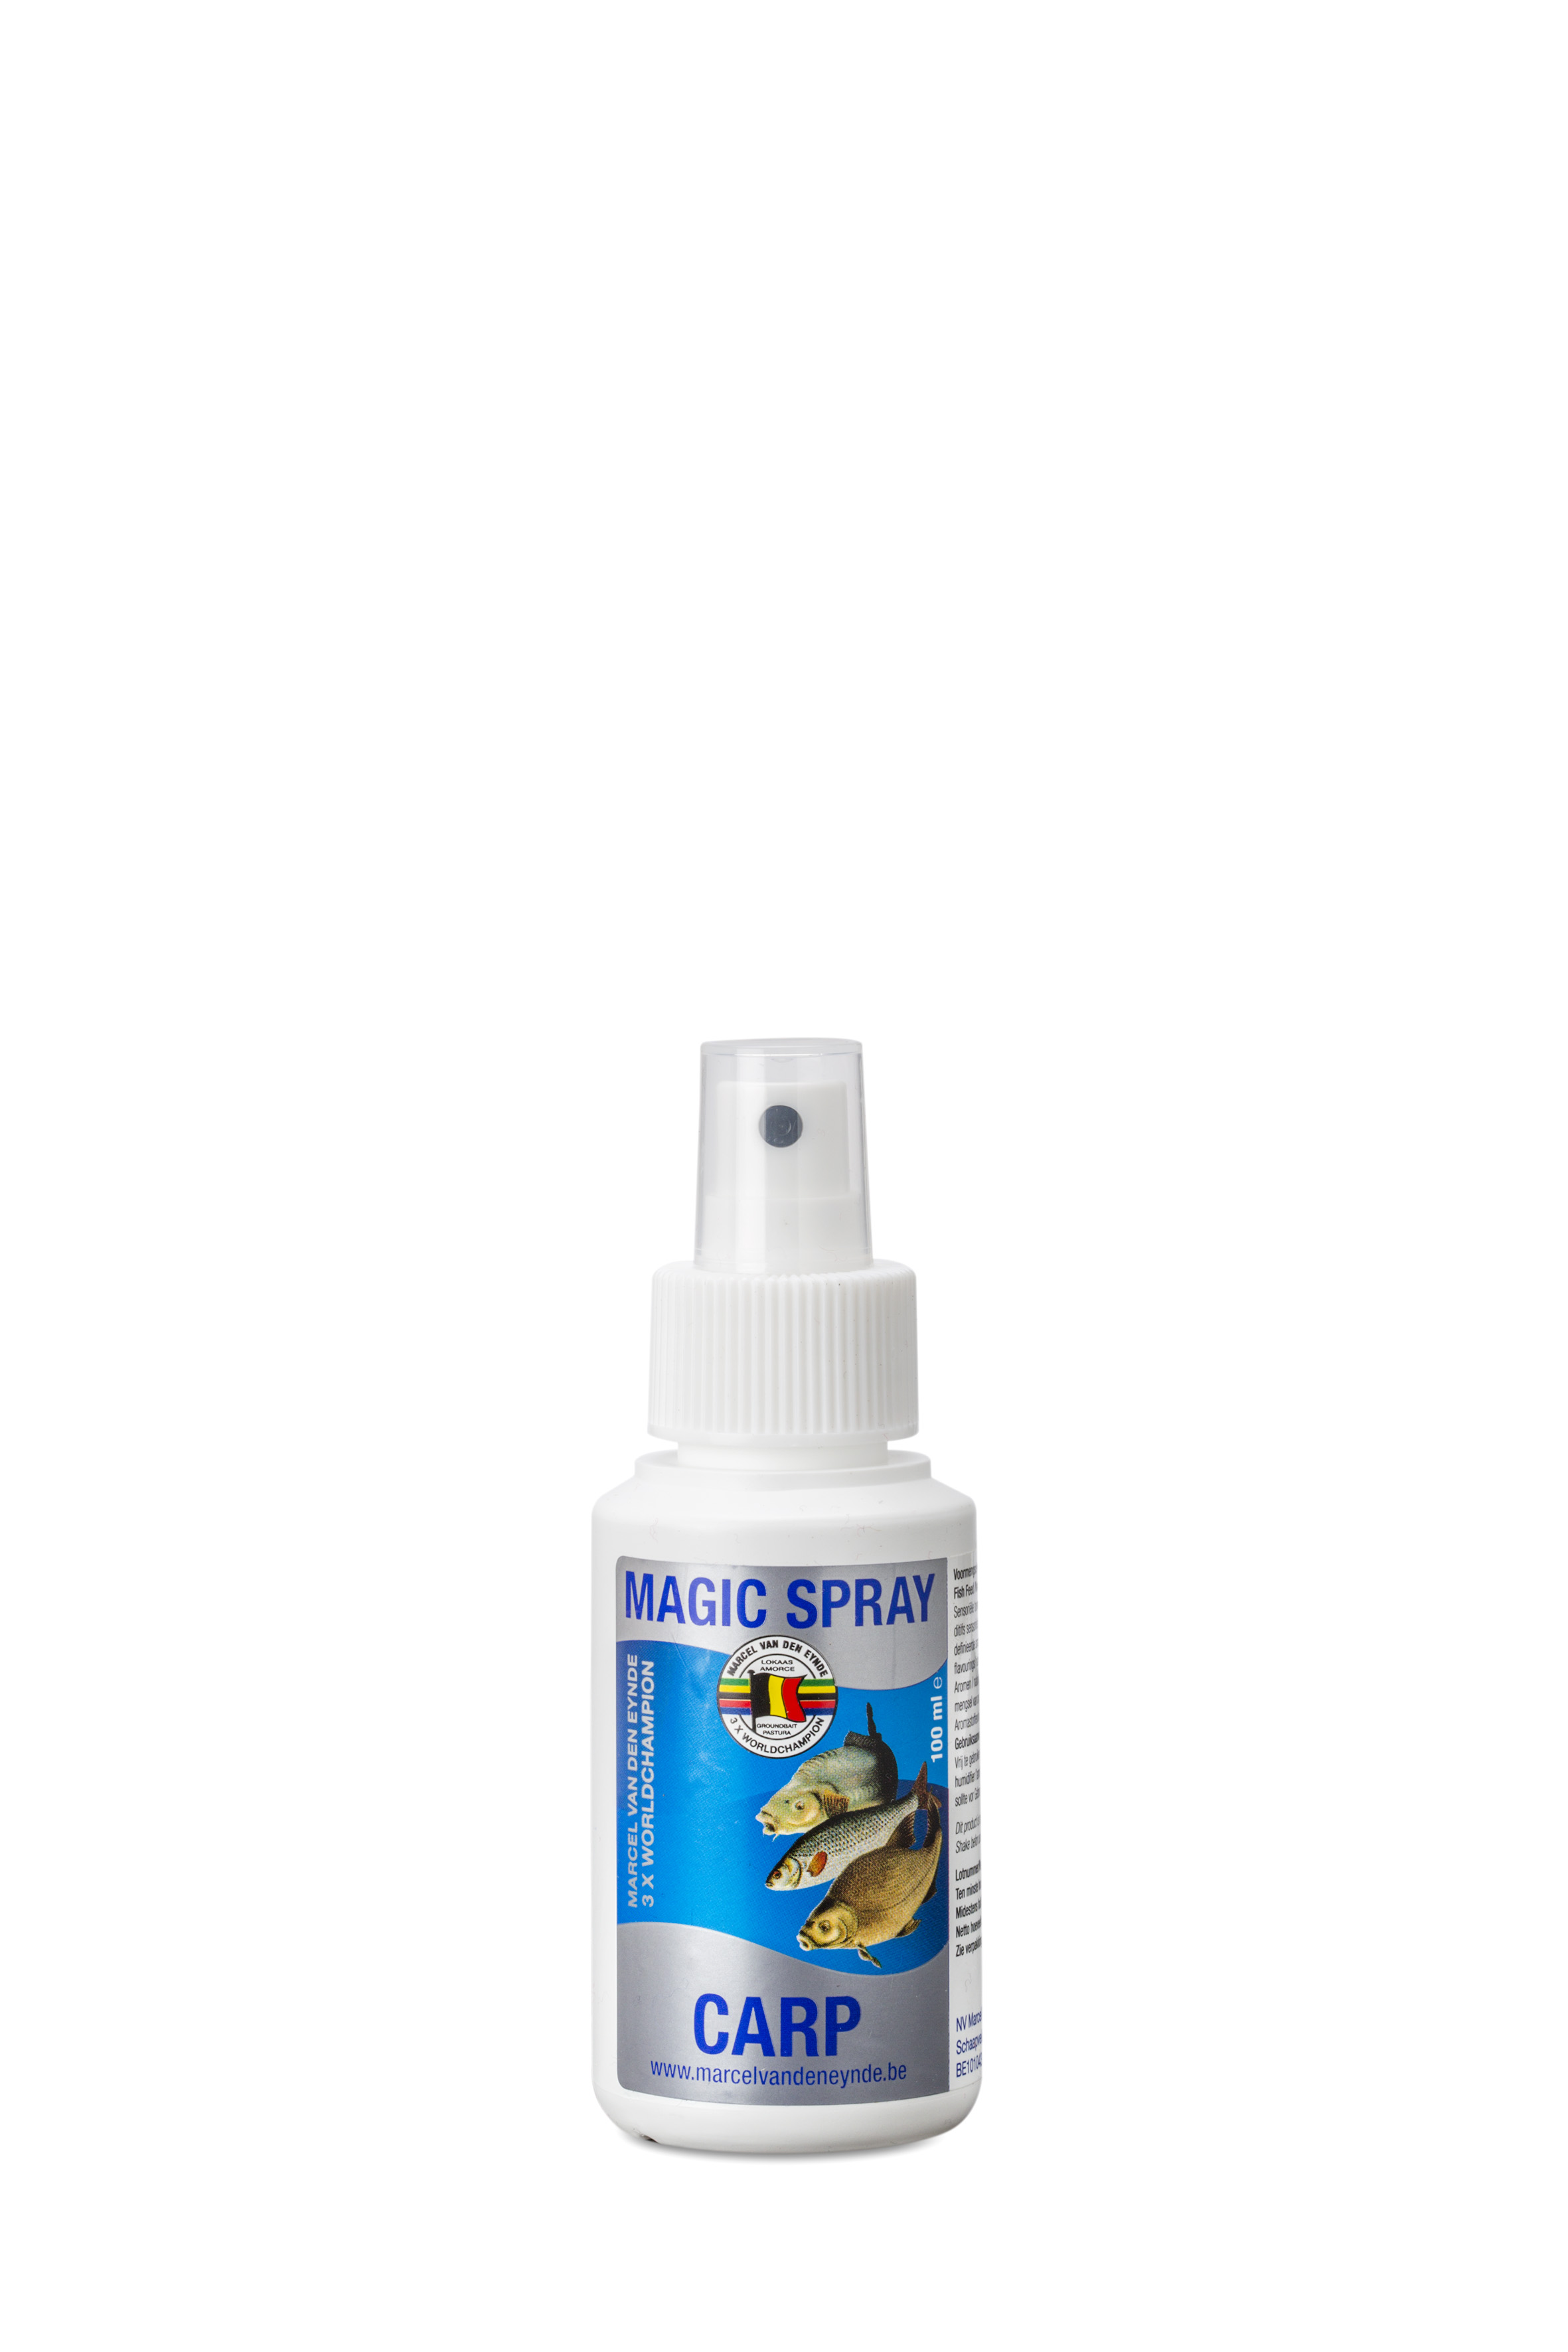 VDE Magic Spray Carp 100 ml - Aditivi za miris i ukus mogu se koristiti na različite načine u ribolovnom sportu. Svrha je da se mamac učini privlačnijim za ribu. Takođe se može koristiti za povećanje atraktivnosti na udicu. Sistem za prskanje je adekvatan za ovu svrhu. Upotreba je vrlo jednostavna, možete prskati mamac na udici odmah nakon što stavite mamac na nju. Cijena: 10 BAM